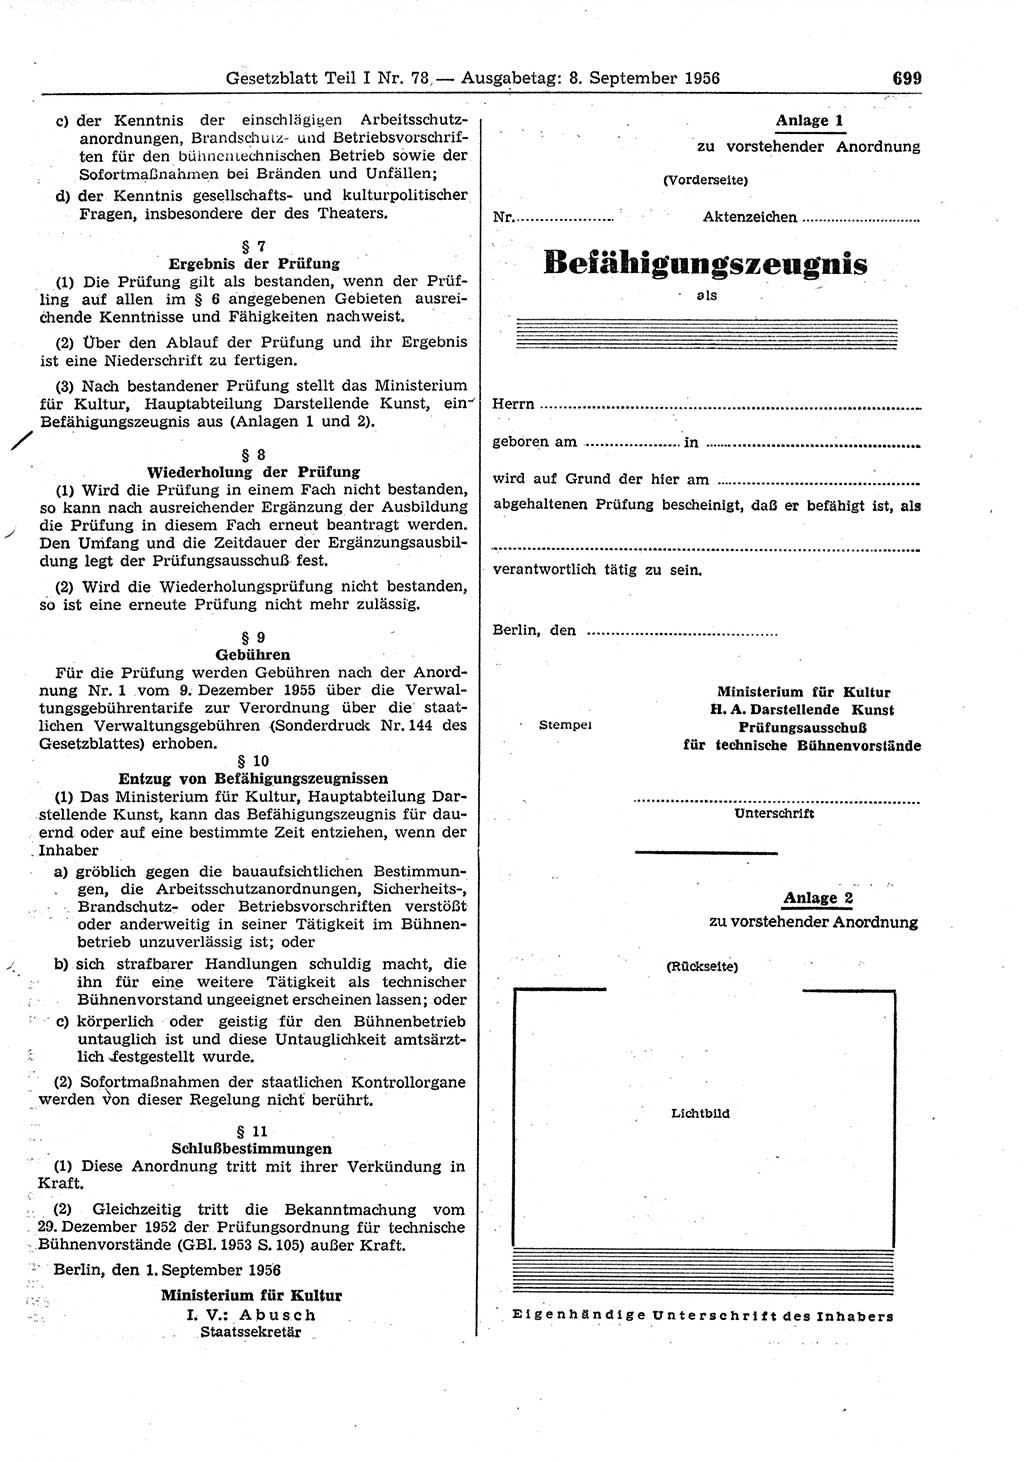 Gesetzblatt (GBl.) der Deutschen Demokratischen Republik (DDR) Teil Ⅰ 1956, Seite 699 (GBl. DDR Ⅰ 1956, S. 699)